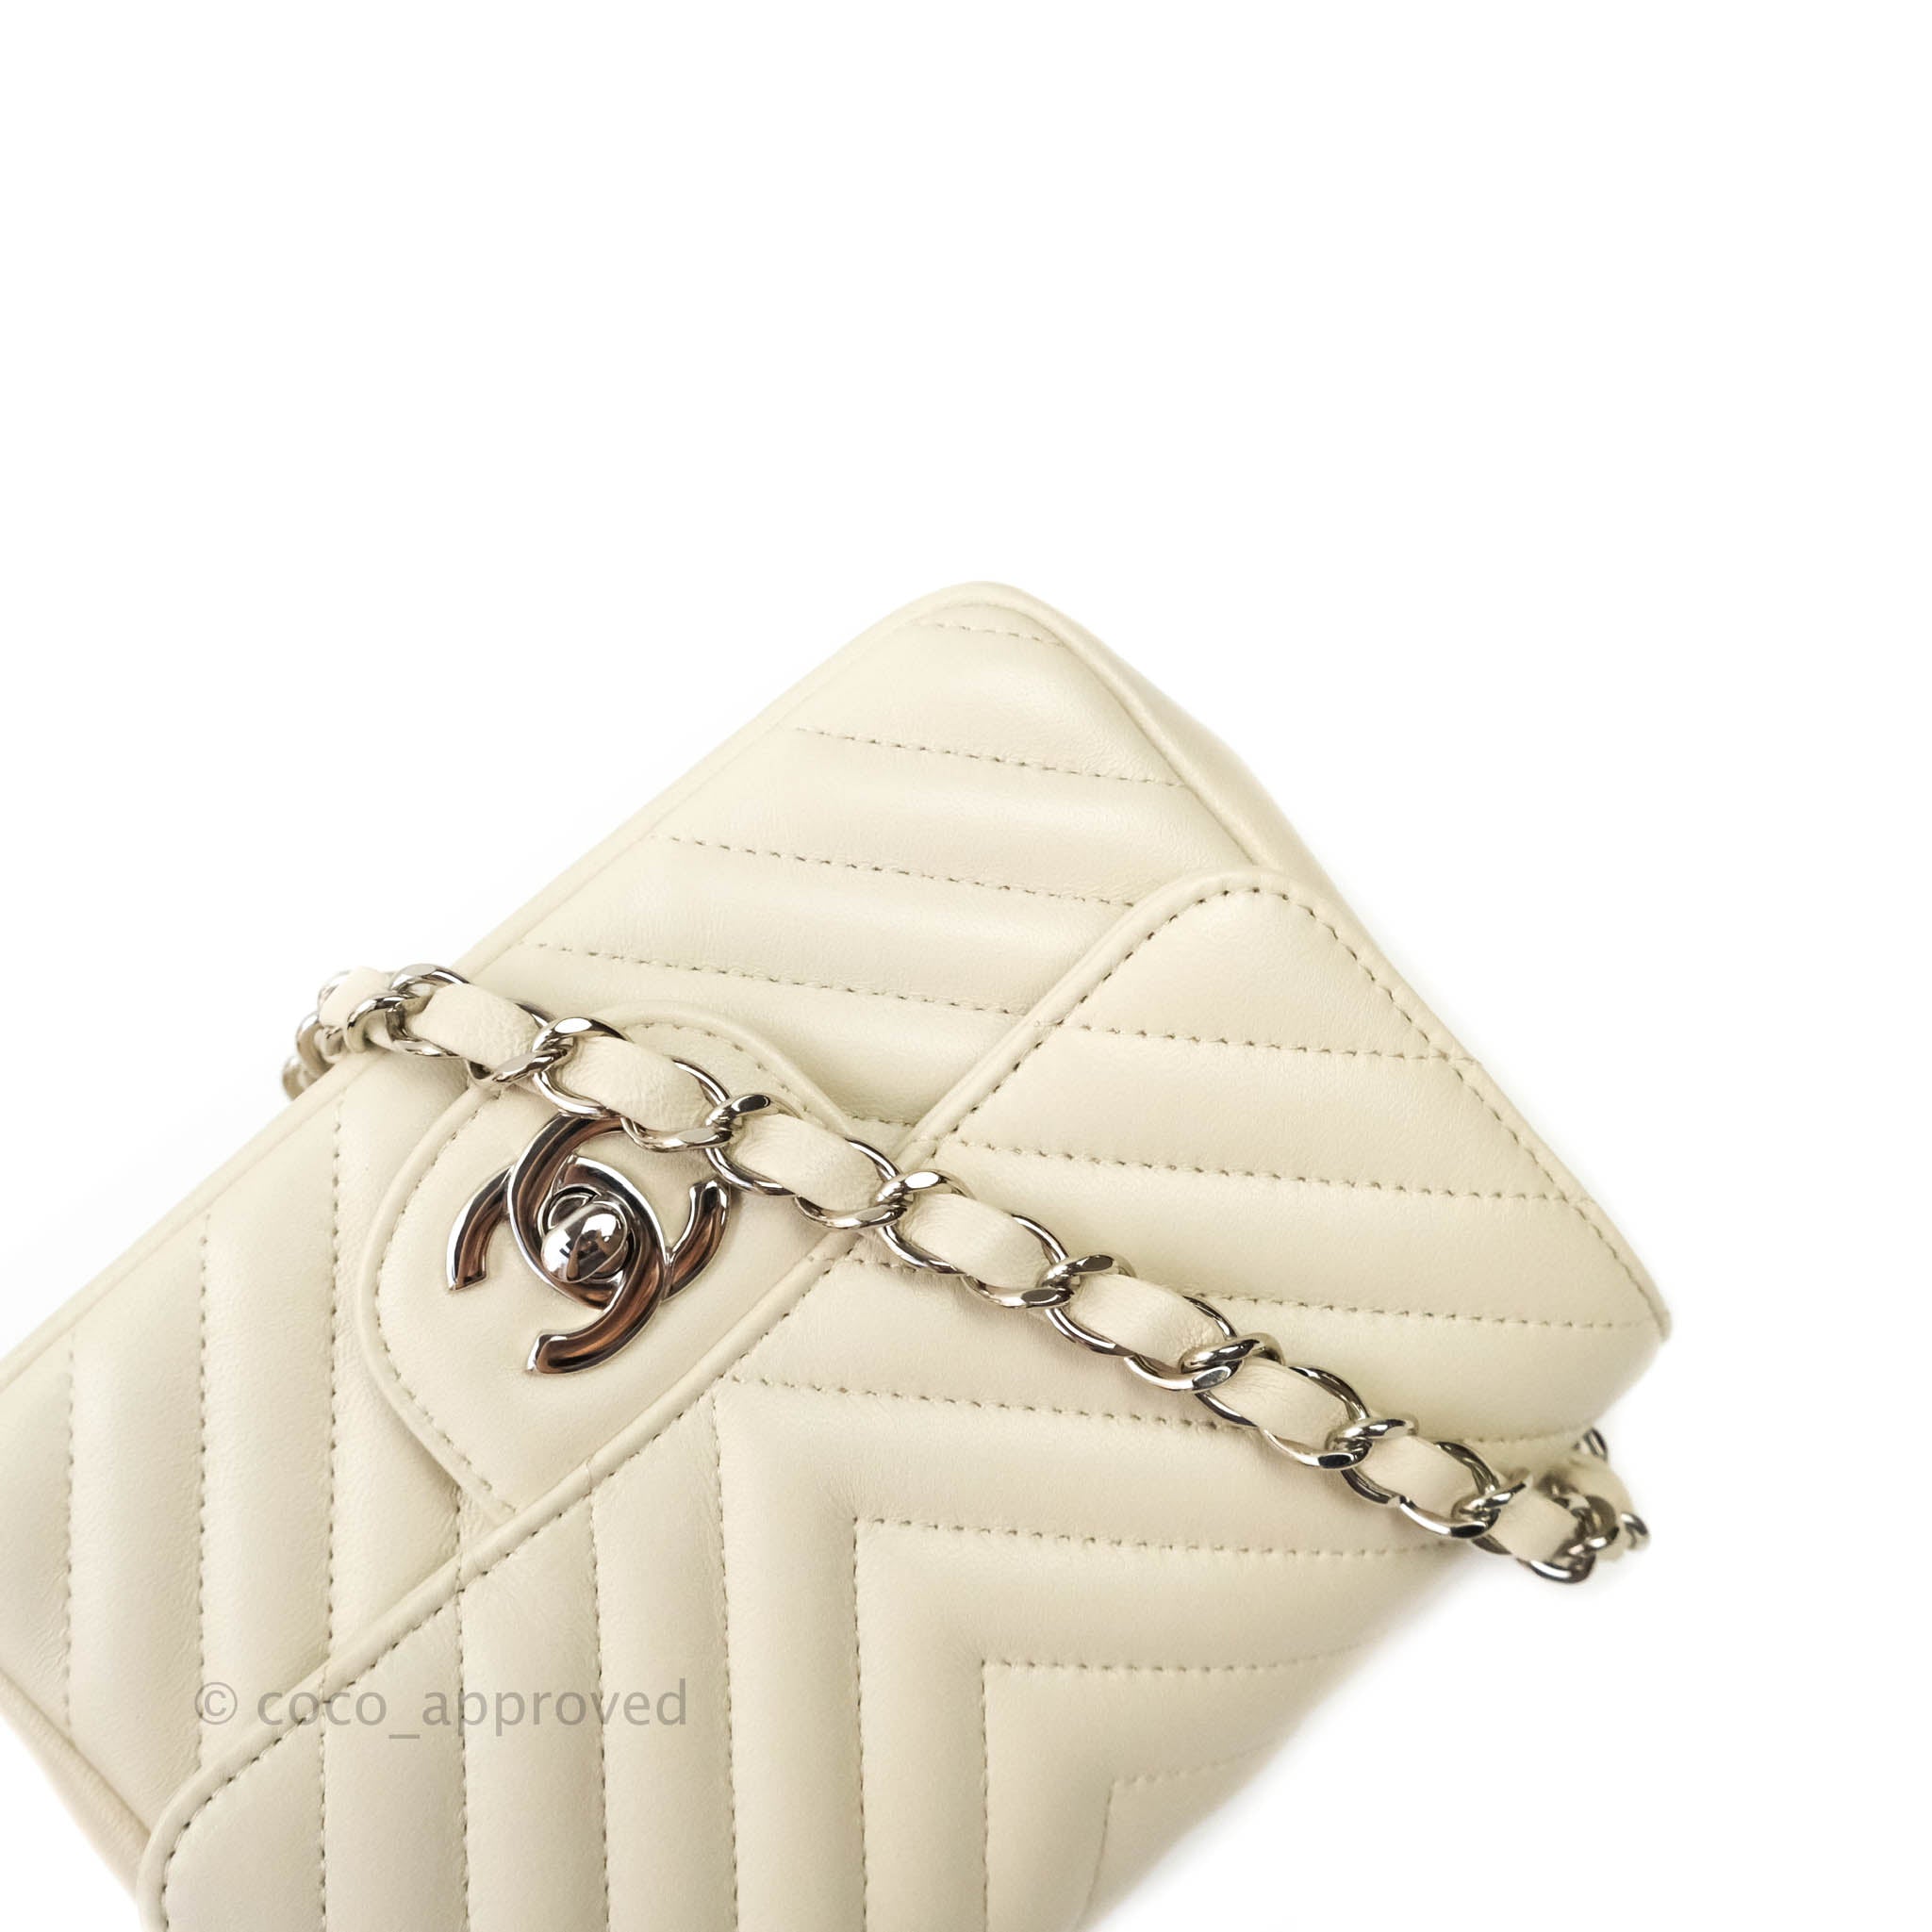 Tan Chanel Medium Lambskin Envelope Flap Handbag – Designer Revival